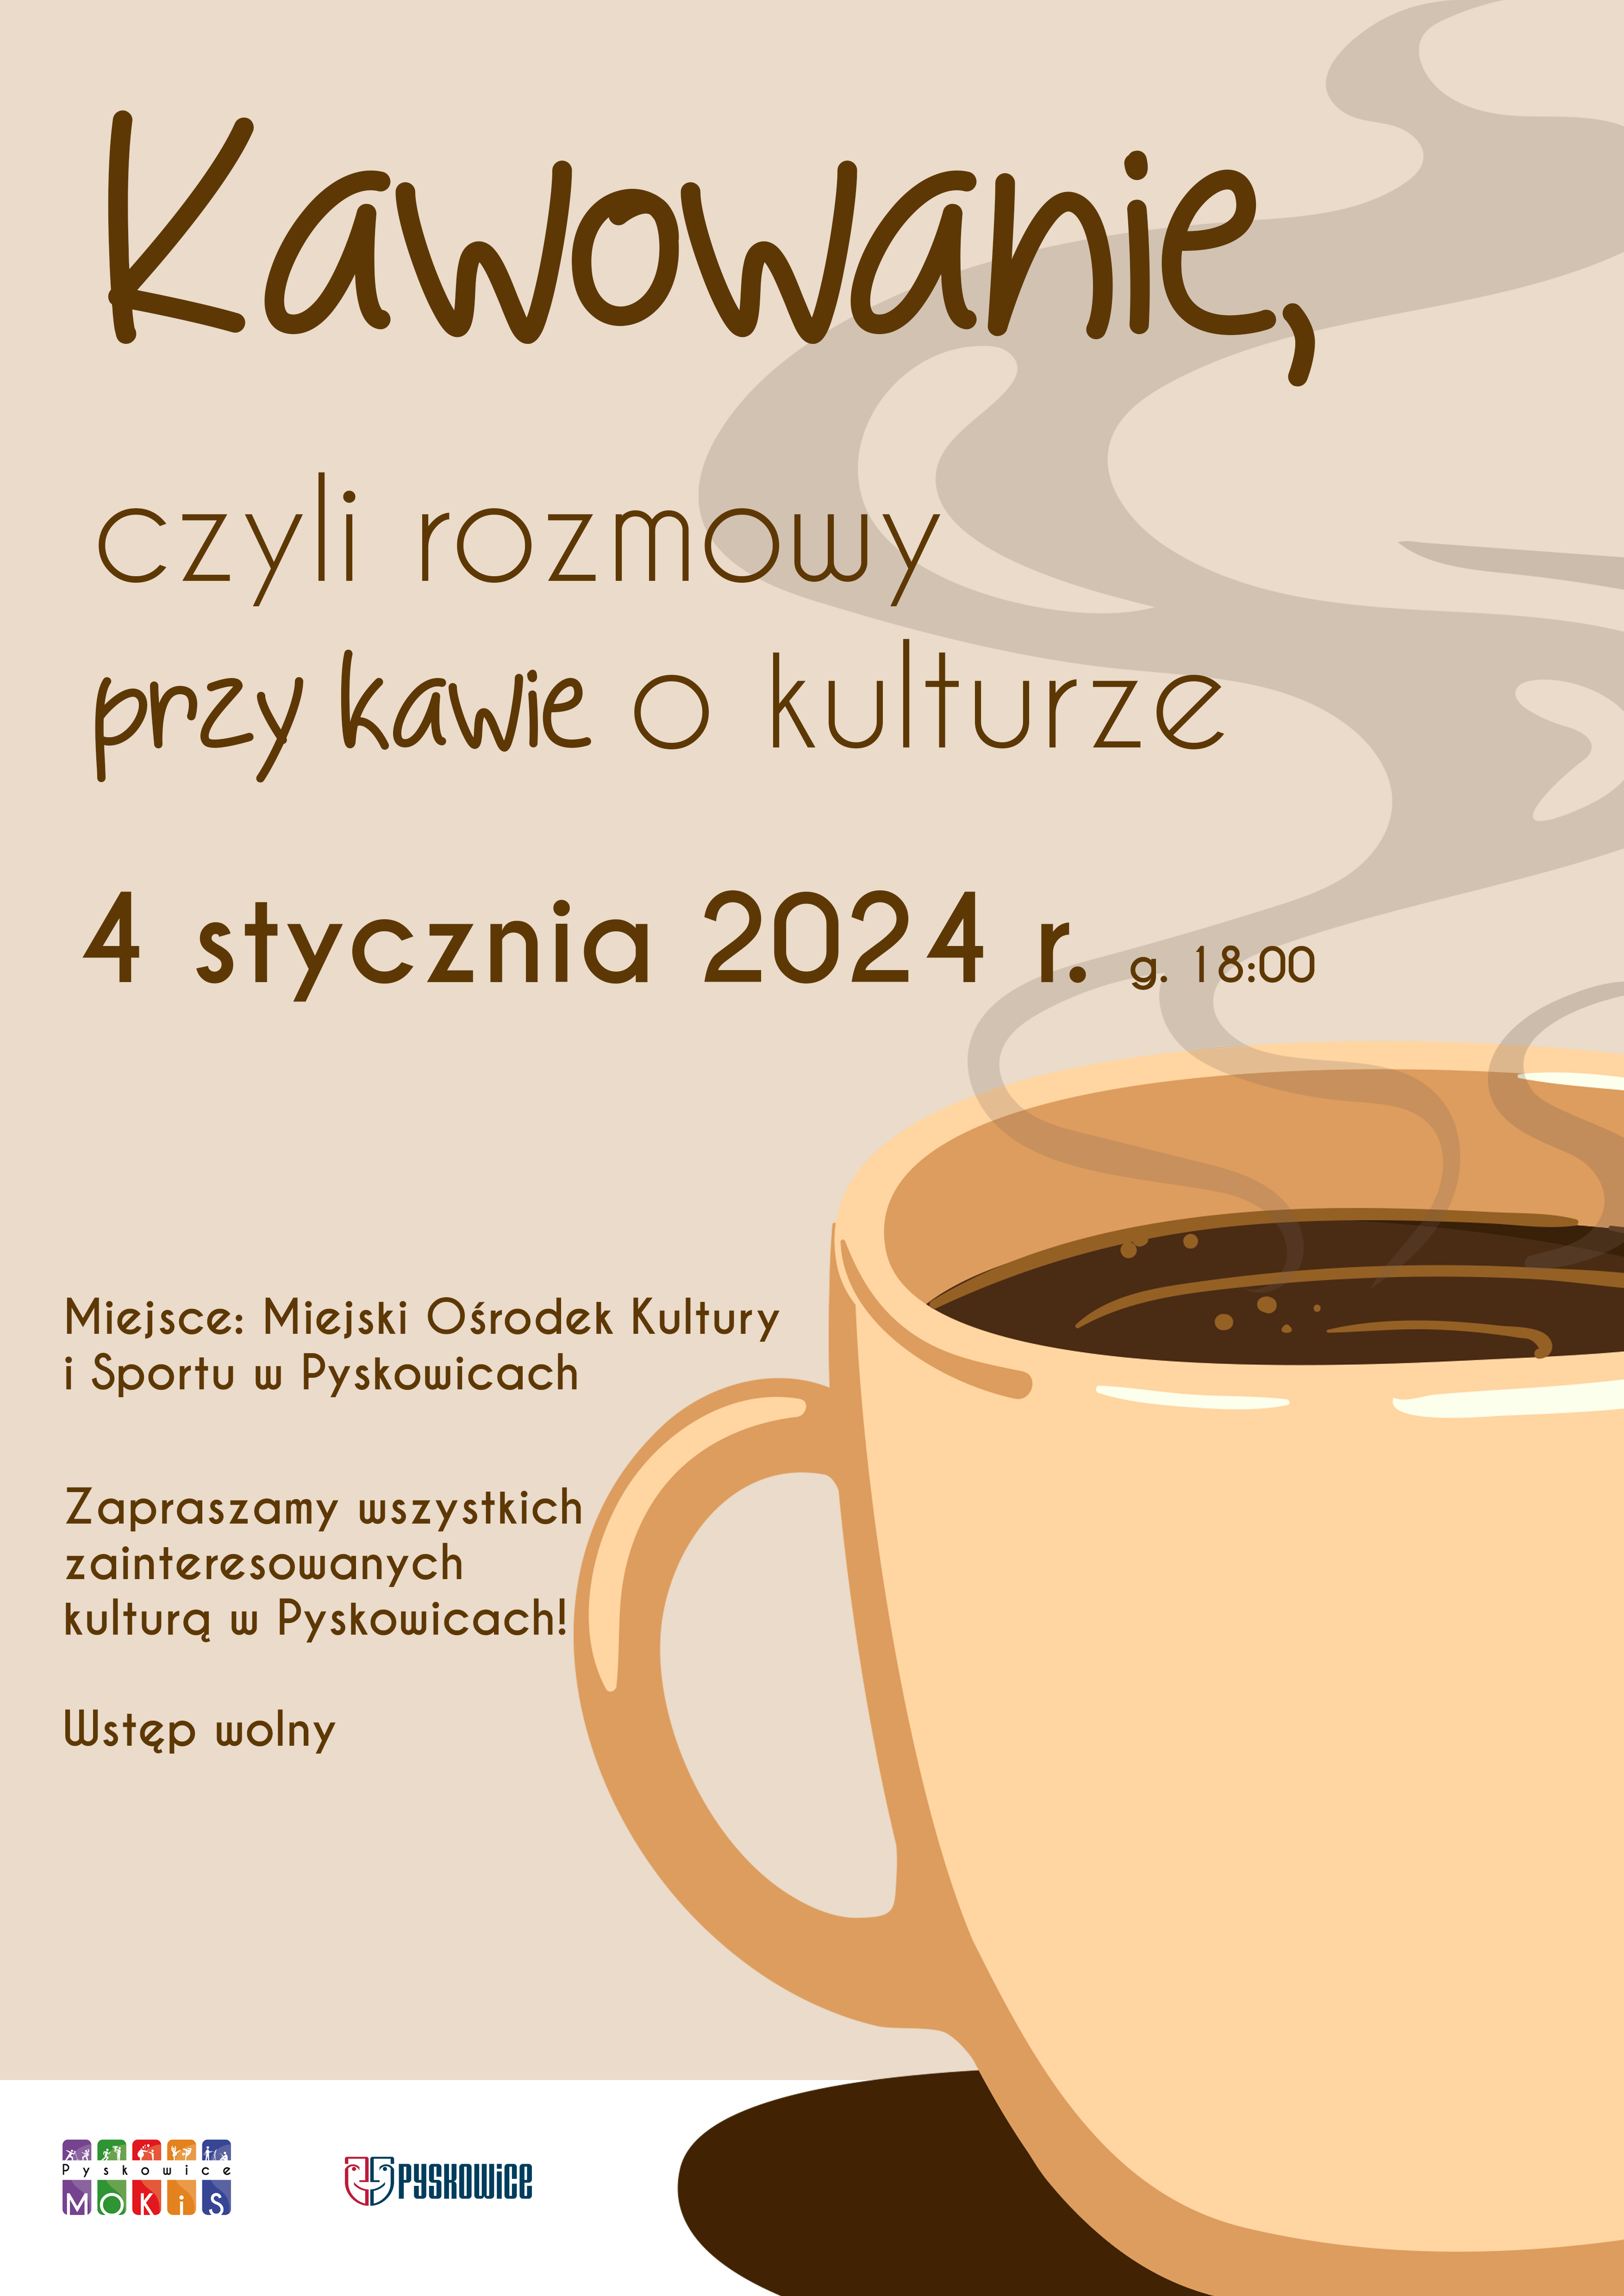 Plakat promujący kawowanie